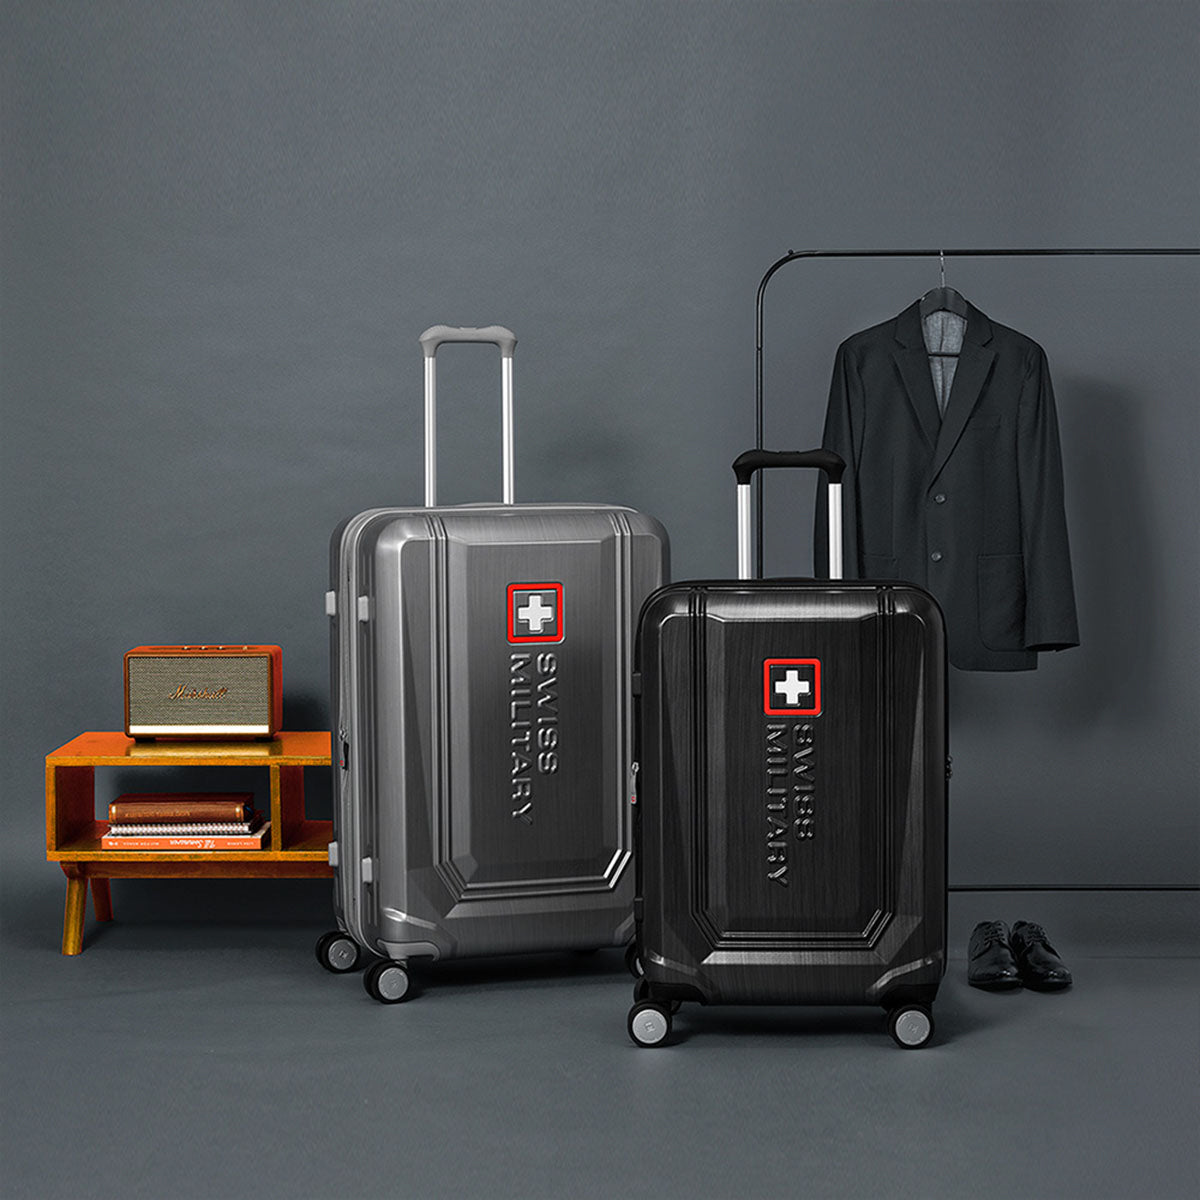 スーツケース Mサイズ 4～6泊 64cm BROQUEL(ブロッケル) チタングレー